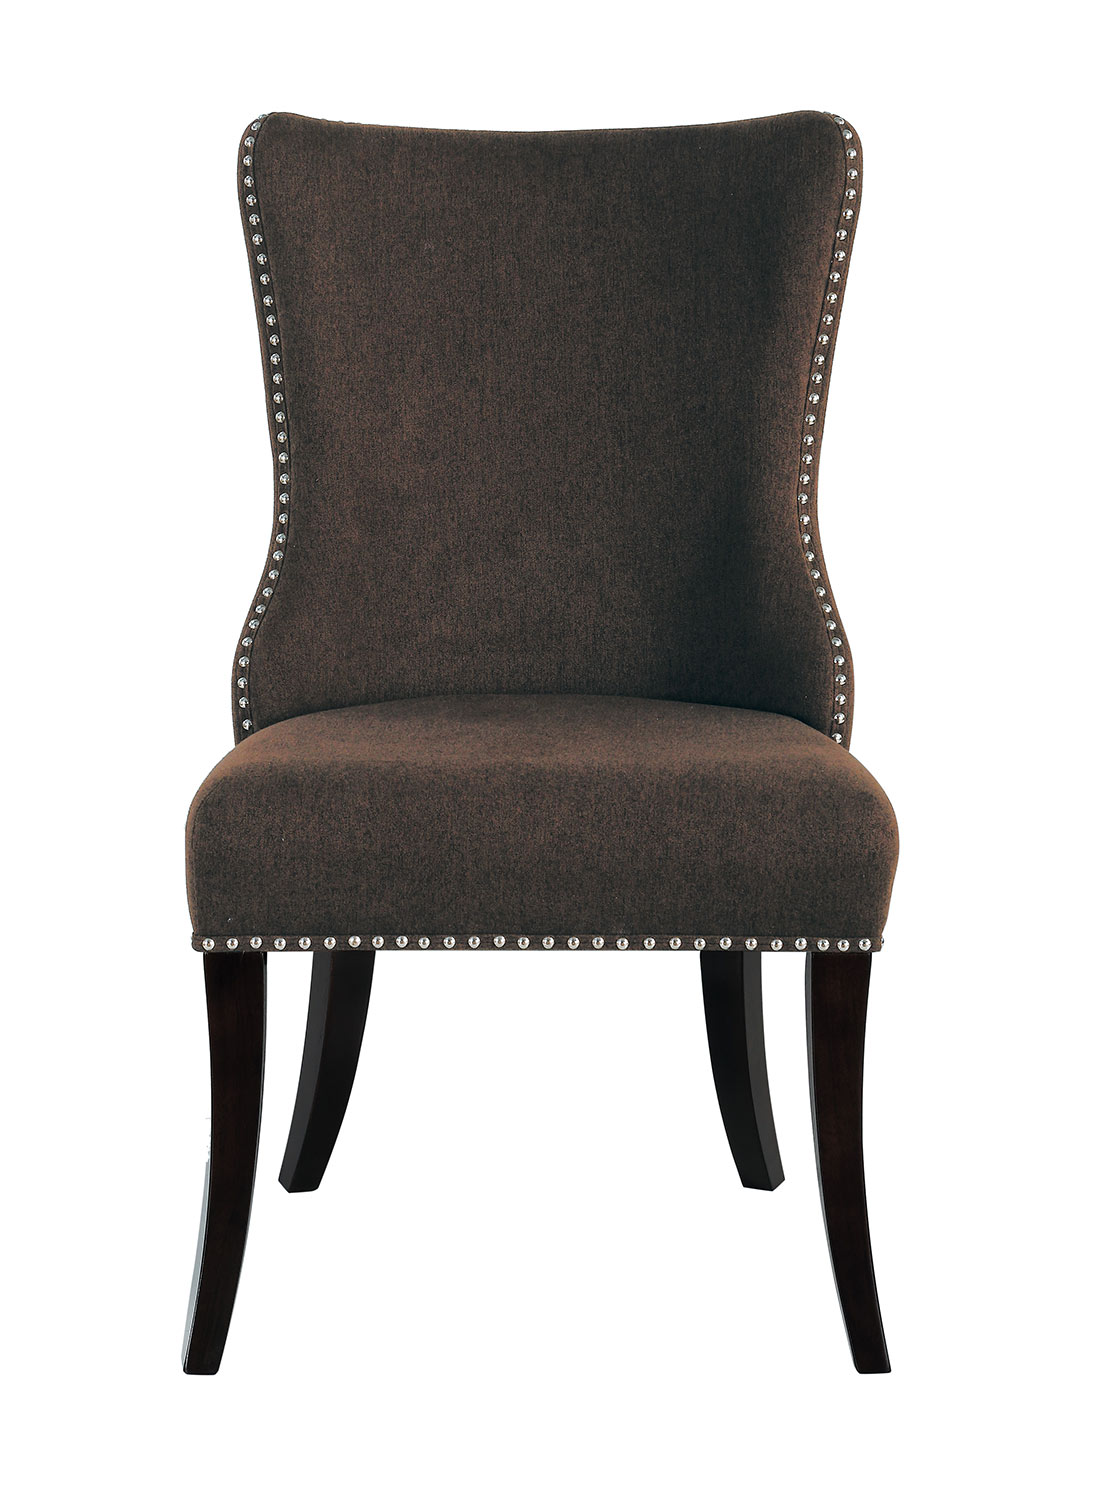 Homelegance Salema Side Chair - Chocolate - Dark Brown